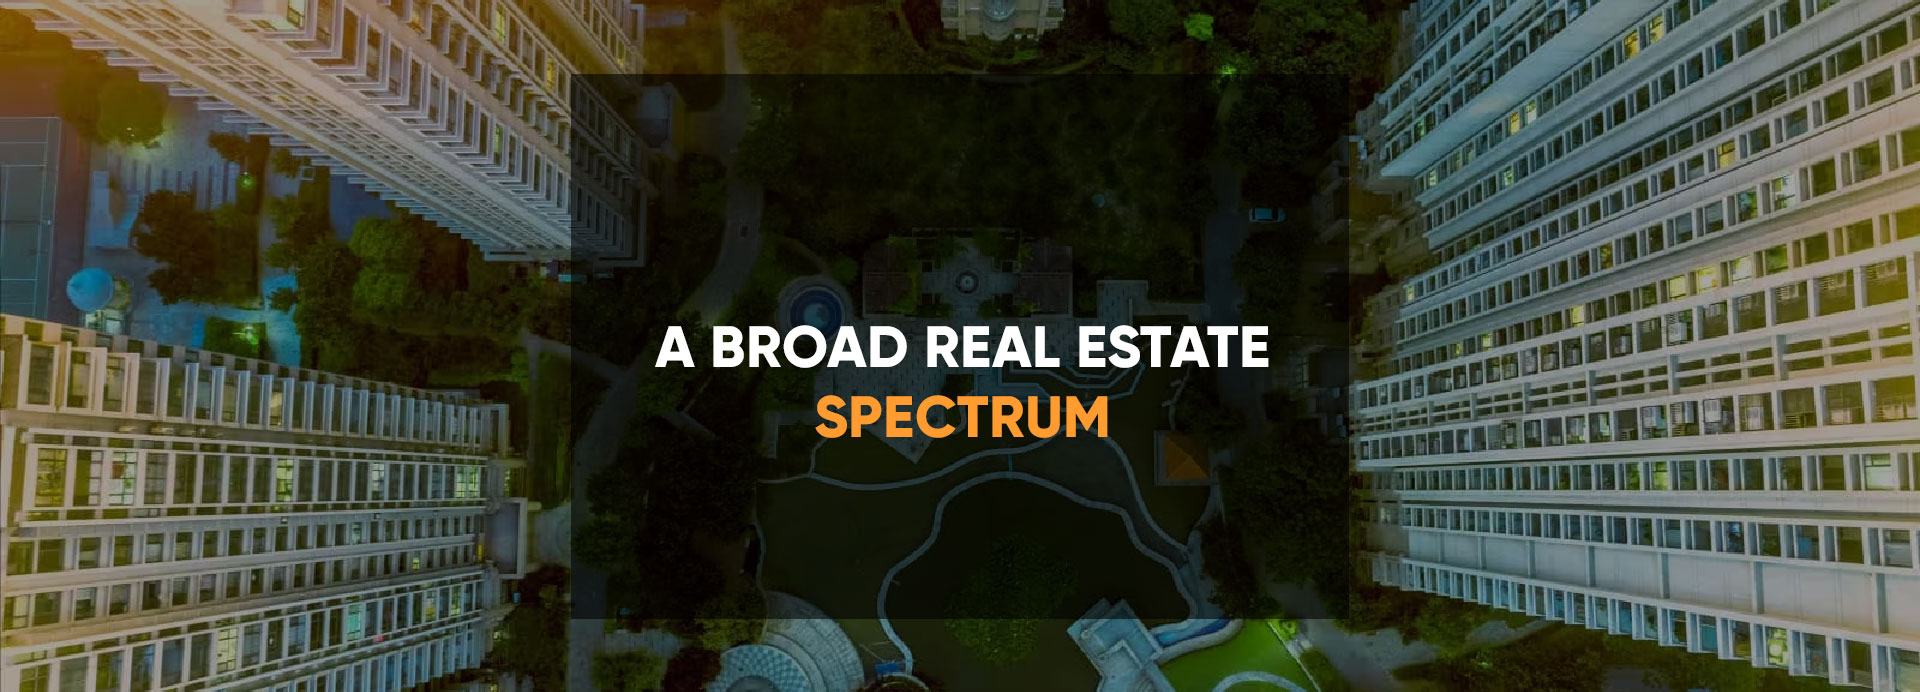 Real Estate Spectrum